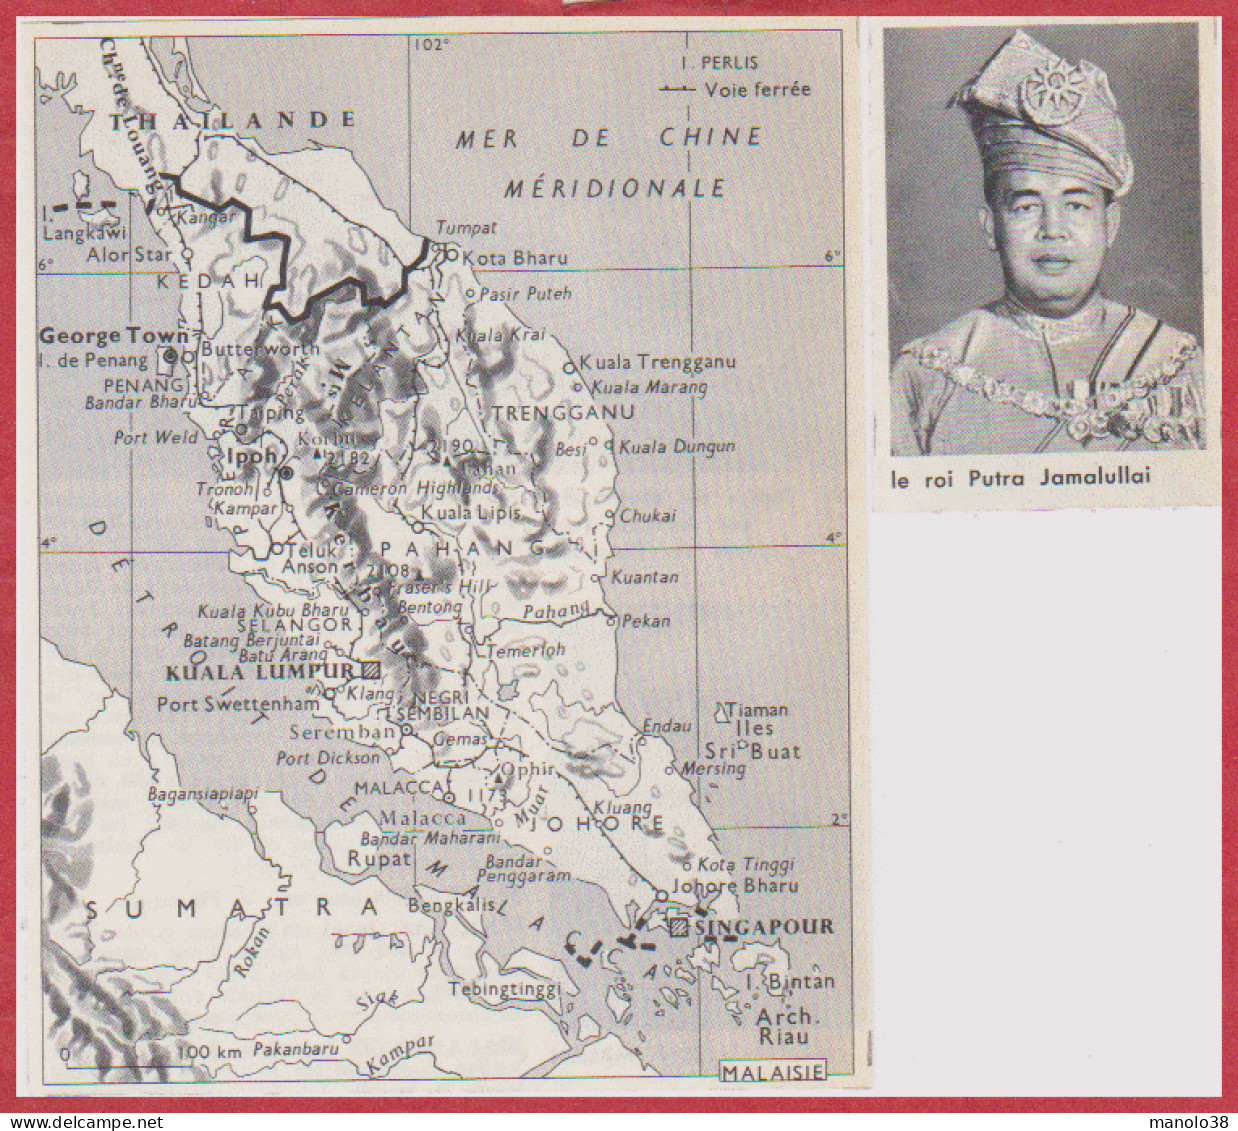 Carte De La Malaisie. Carte Avec Voie Ferrée. Le Roi Putra Jamalullai. Larousse 1960. - Documents Historiques